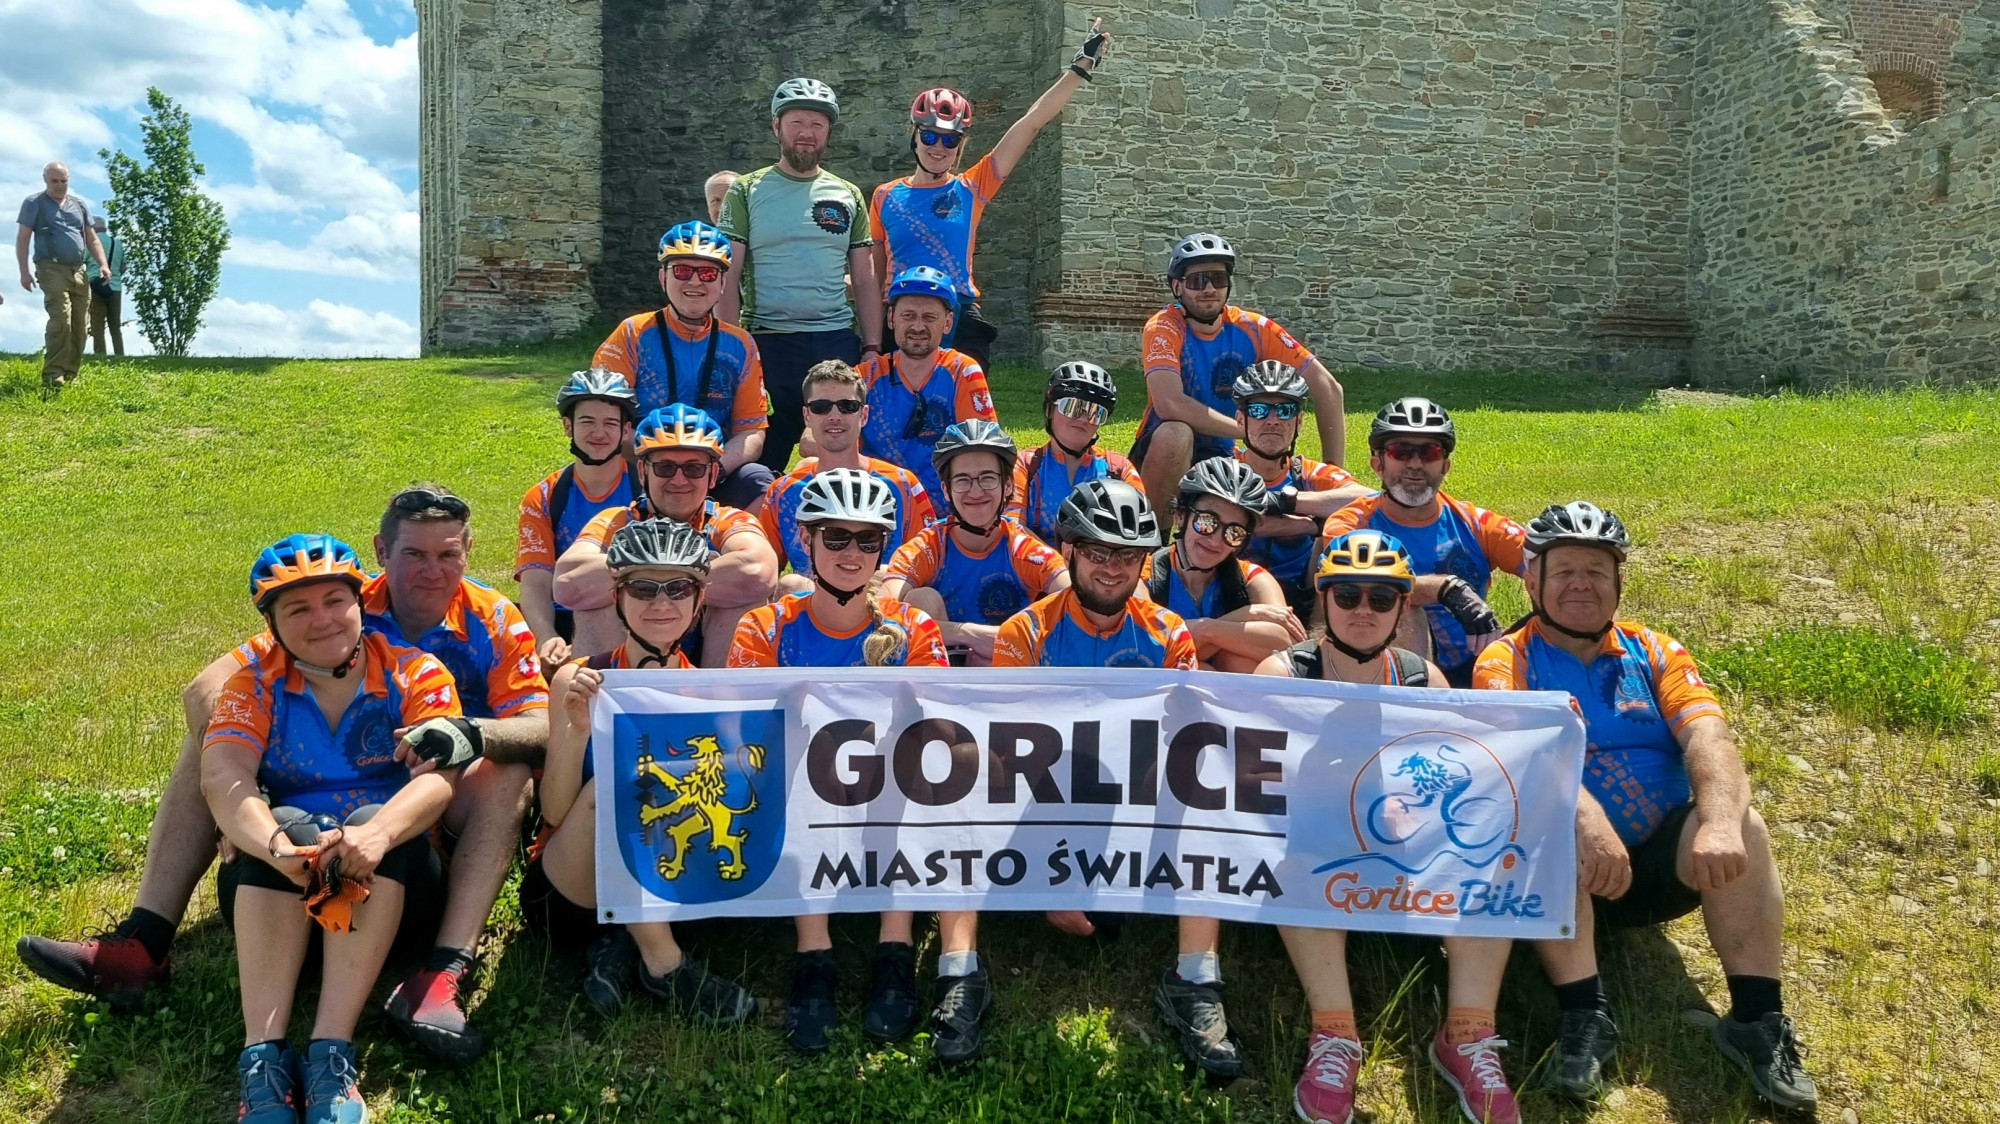 Grupa GorliceBike z flagą Gorlice Miasto Światła.